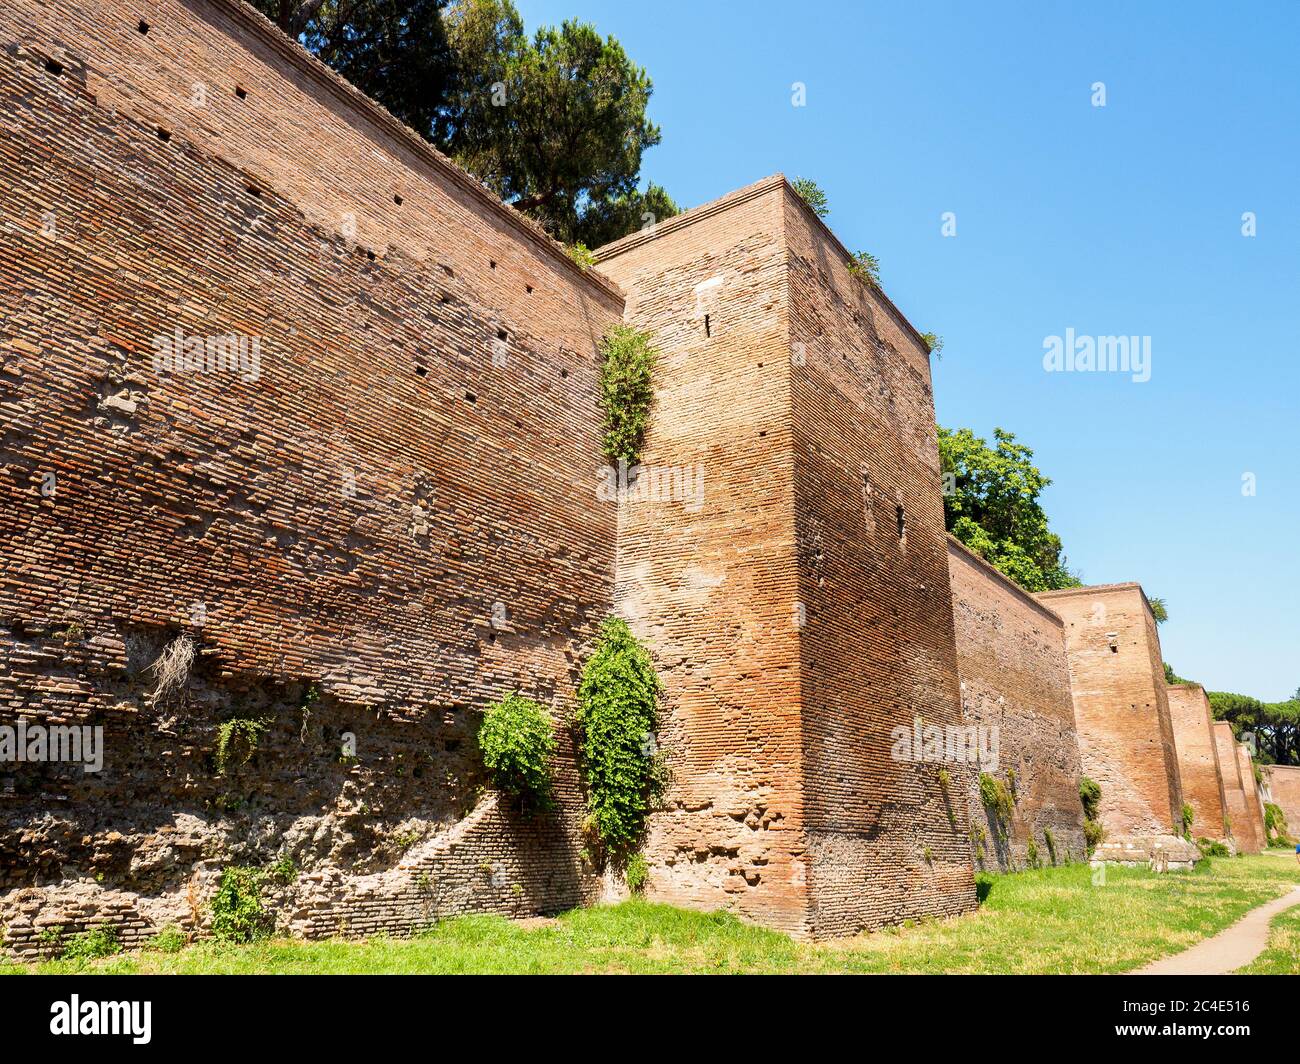 Aurelian walls - Rome, Italy Stock Photo